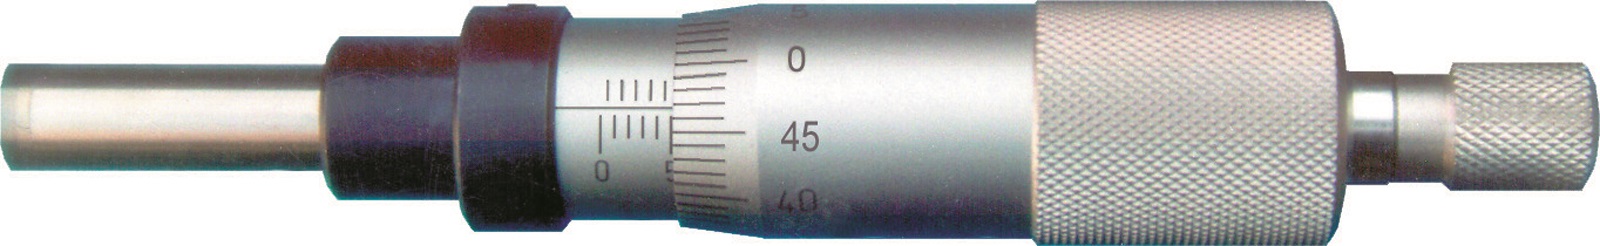 Einbau-Messschraube DIN 863 - 25 mm - Spindel nicht drehend